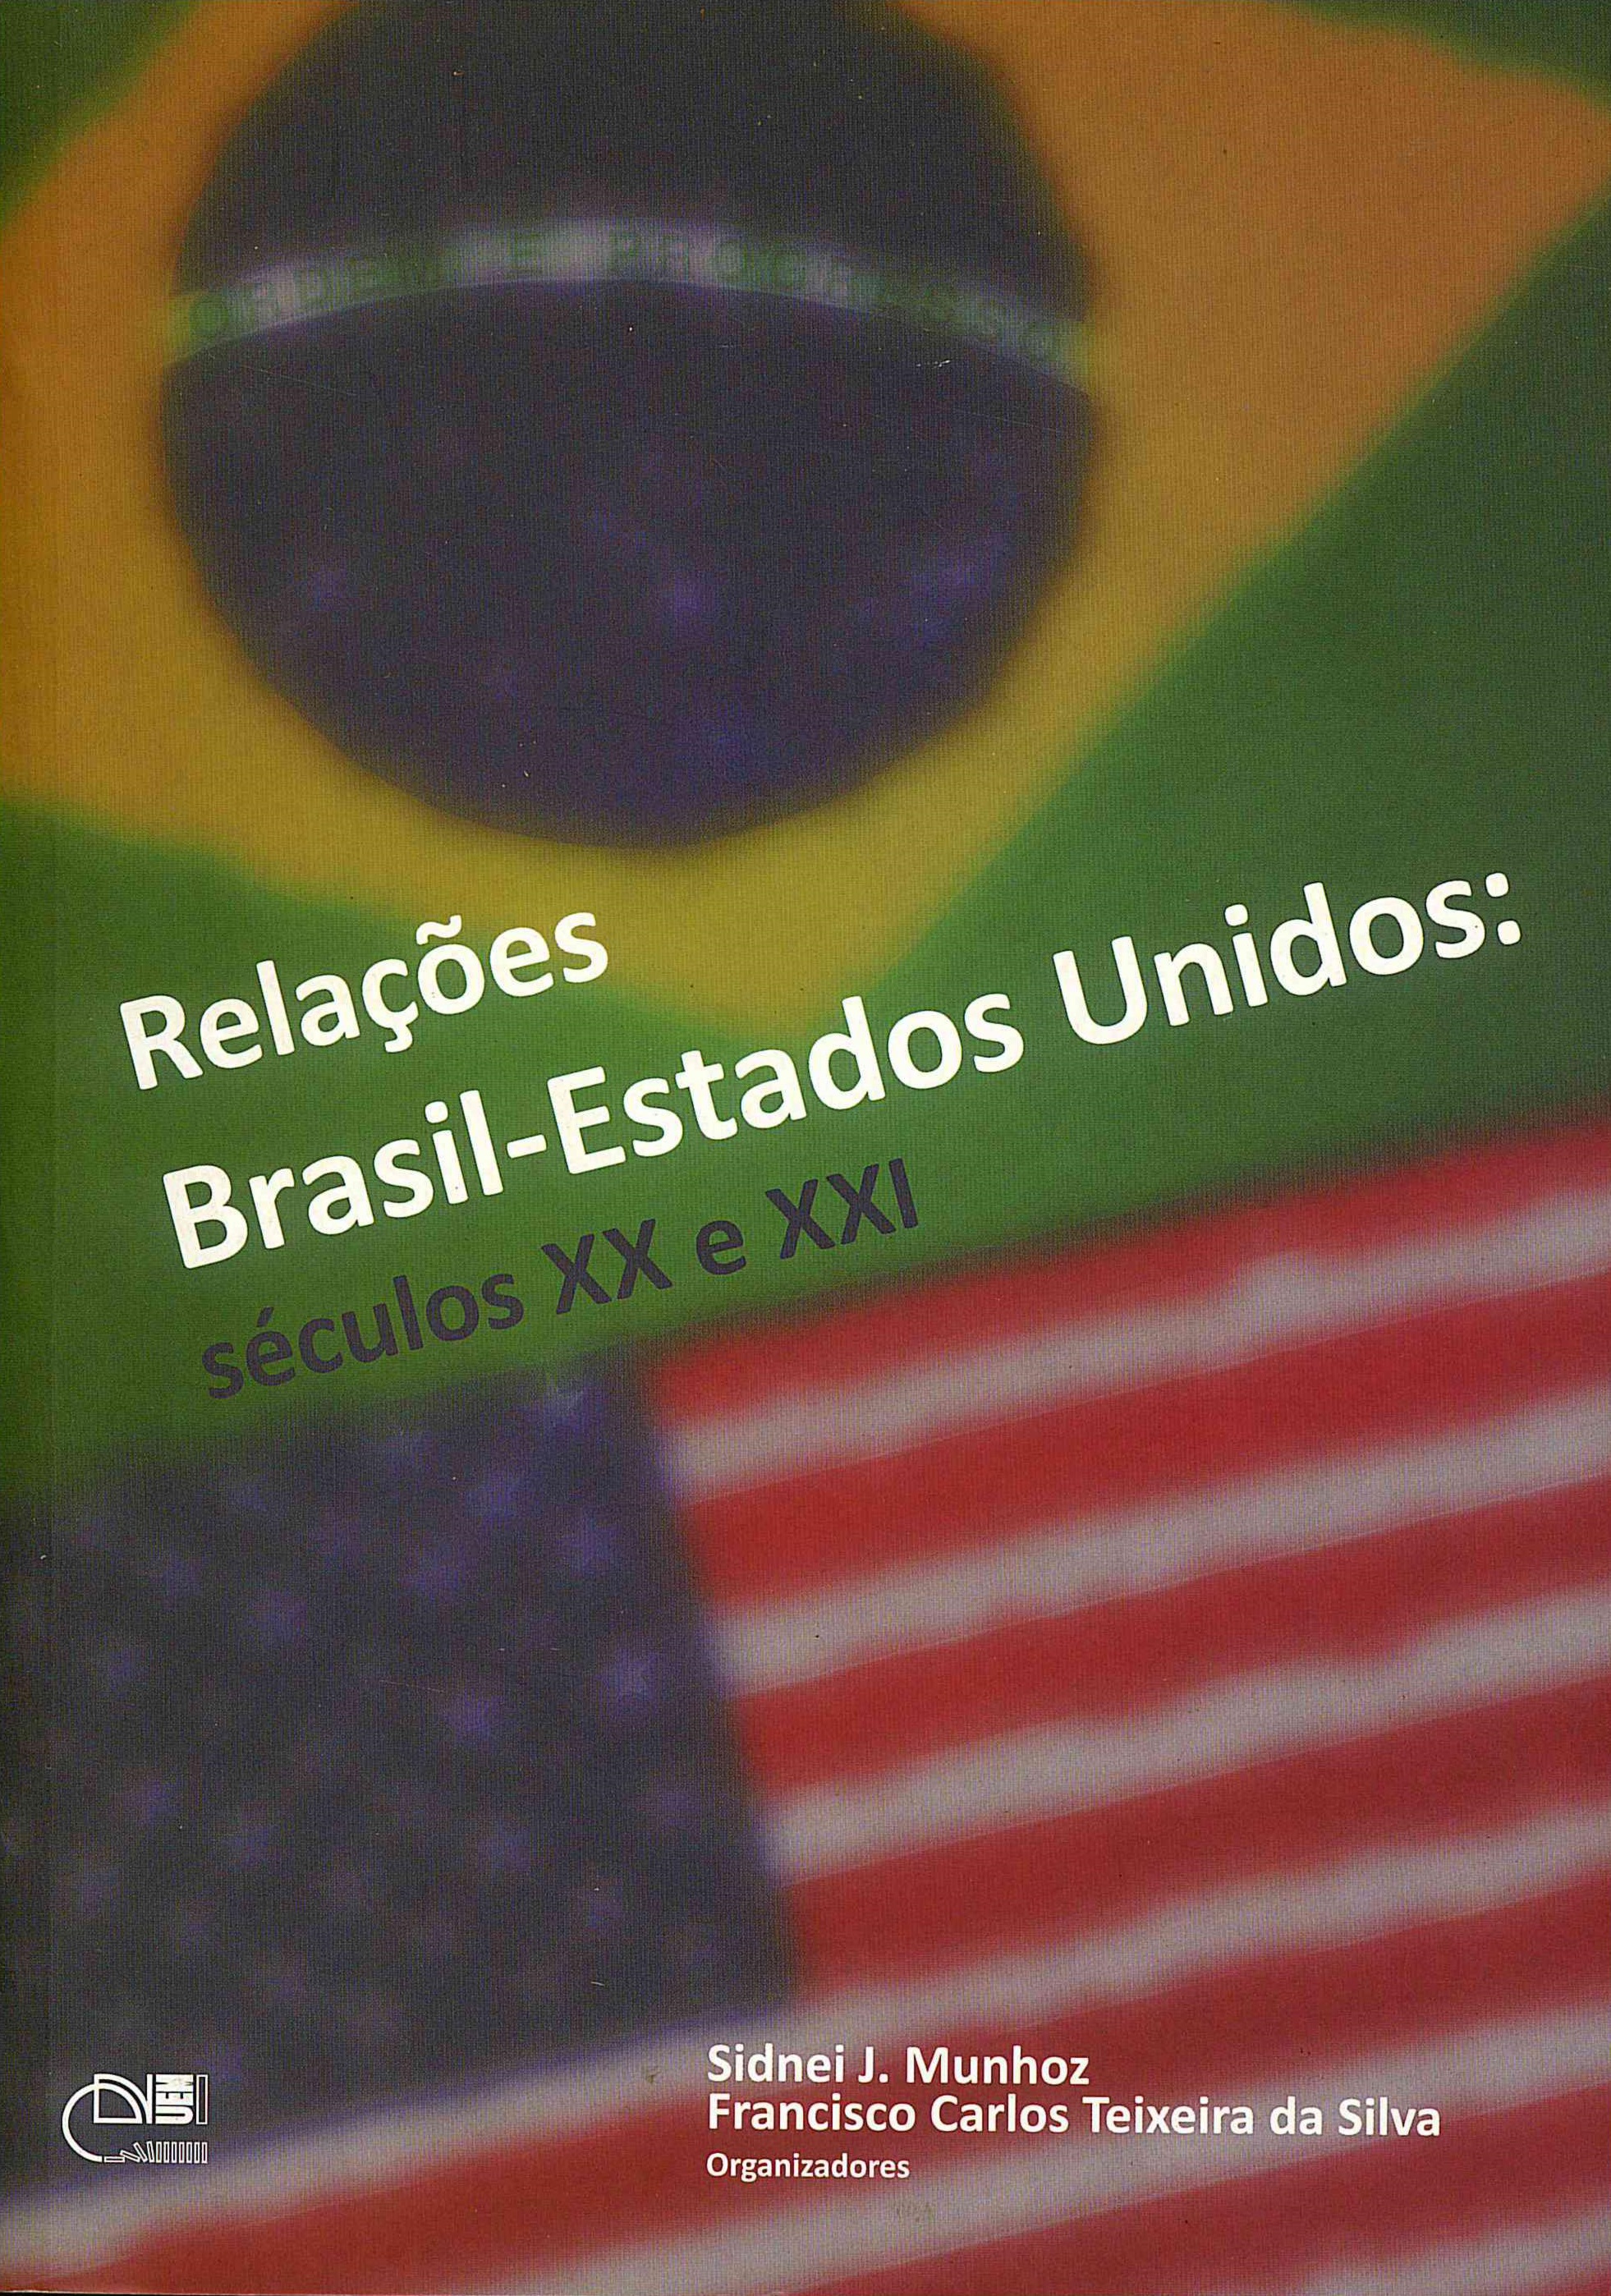 Relações Brasil-Estados Unidos: séculos XX e XXI